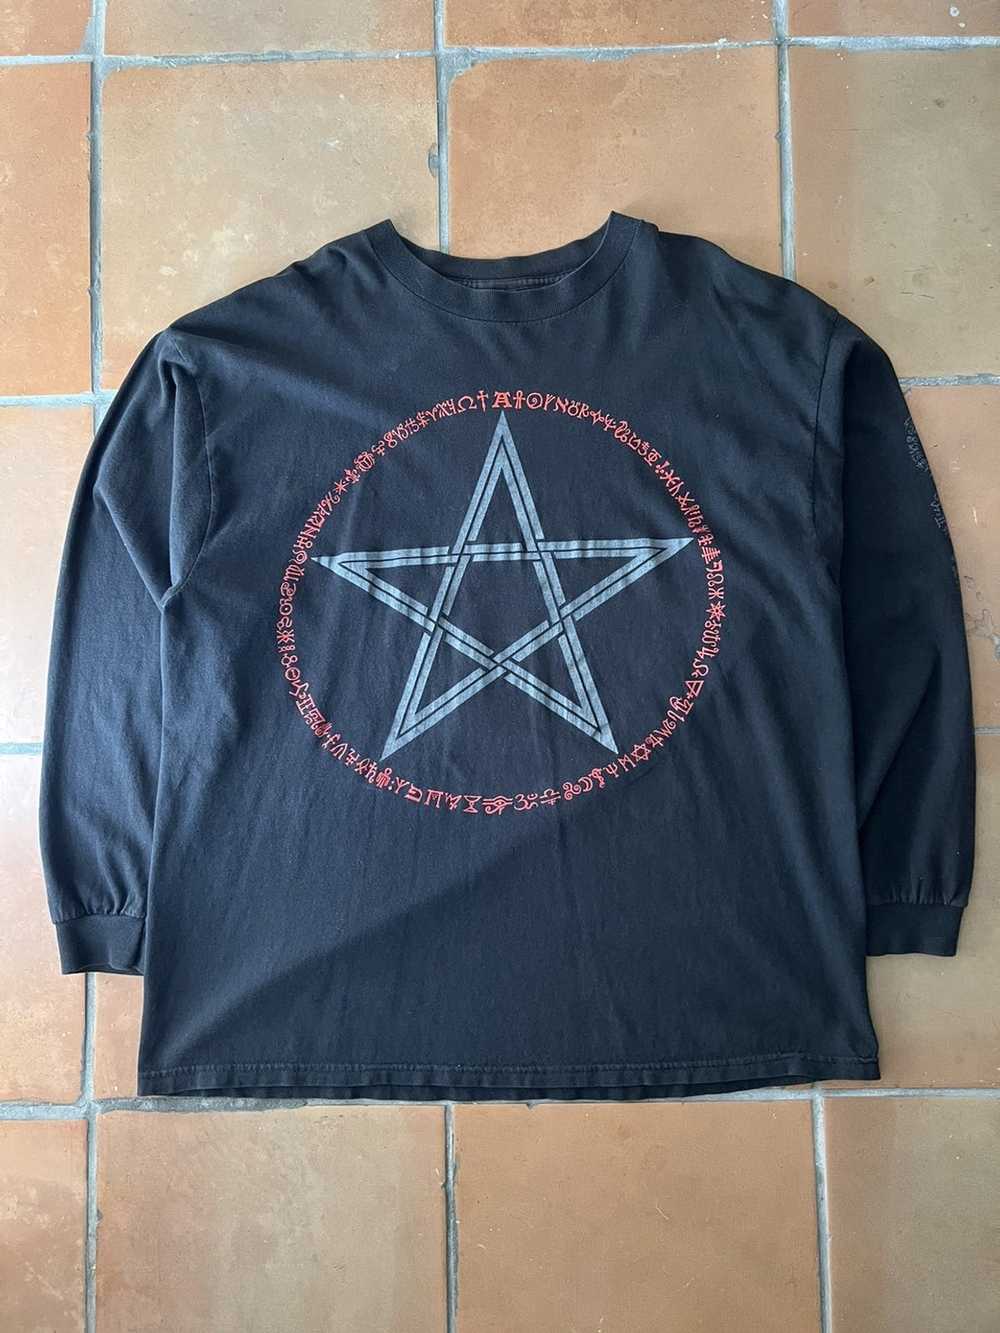 Vintage Late 90s Pentagram Long Sleeve Tshirt - image 1